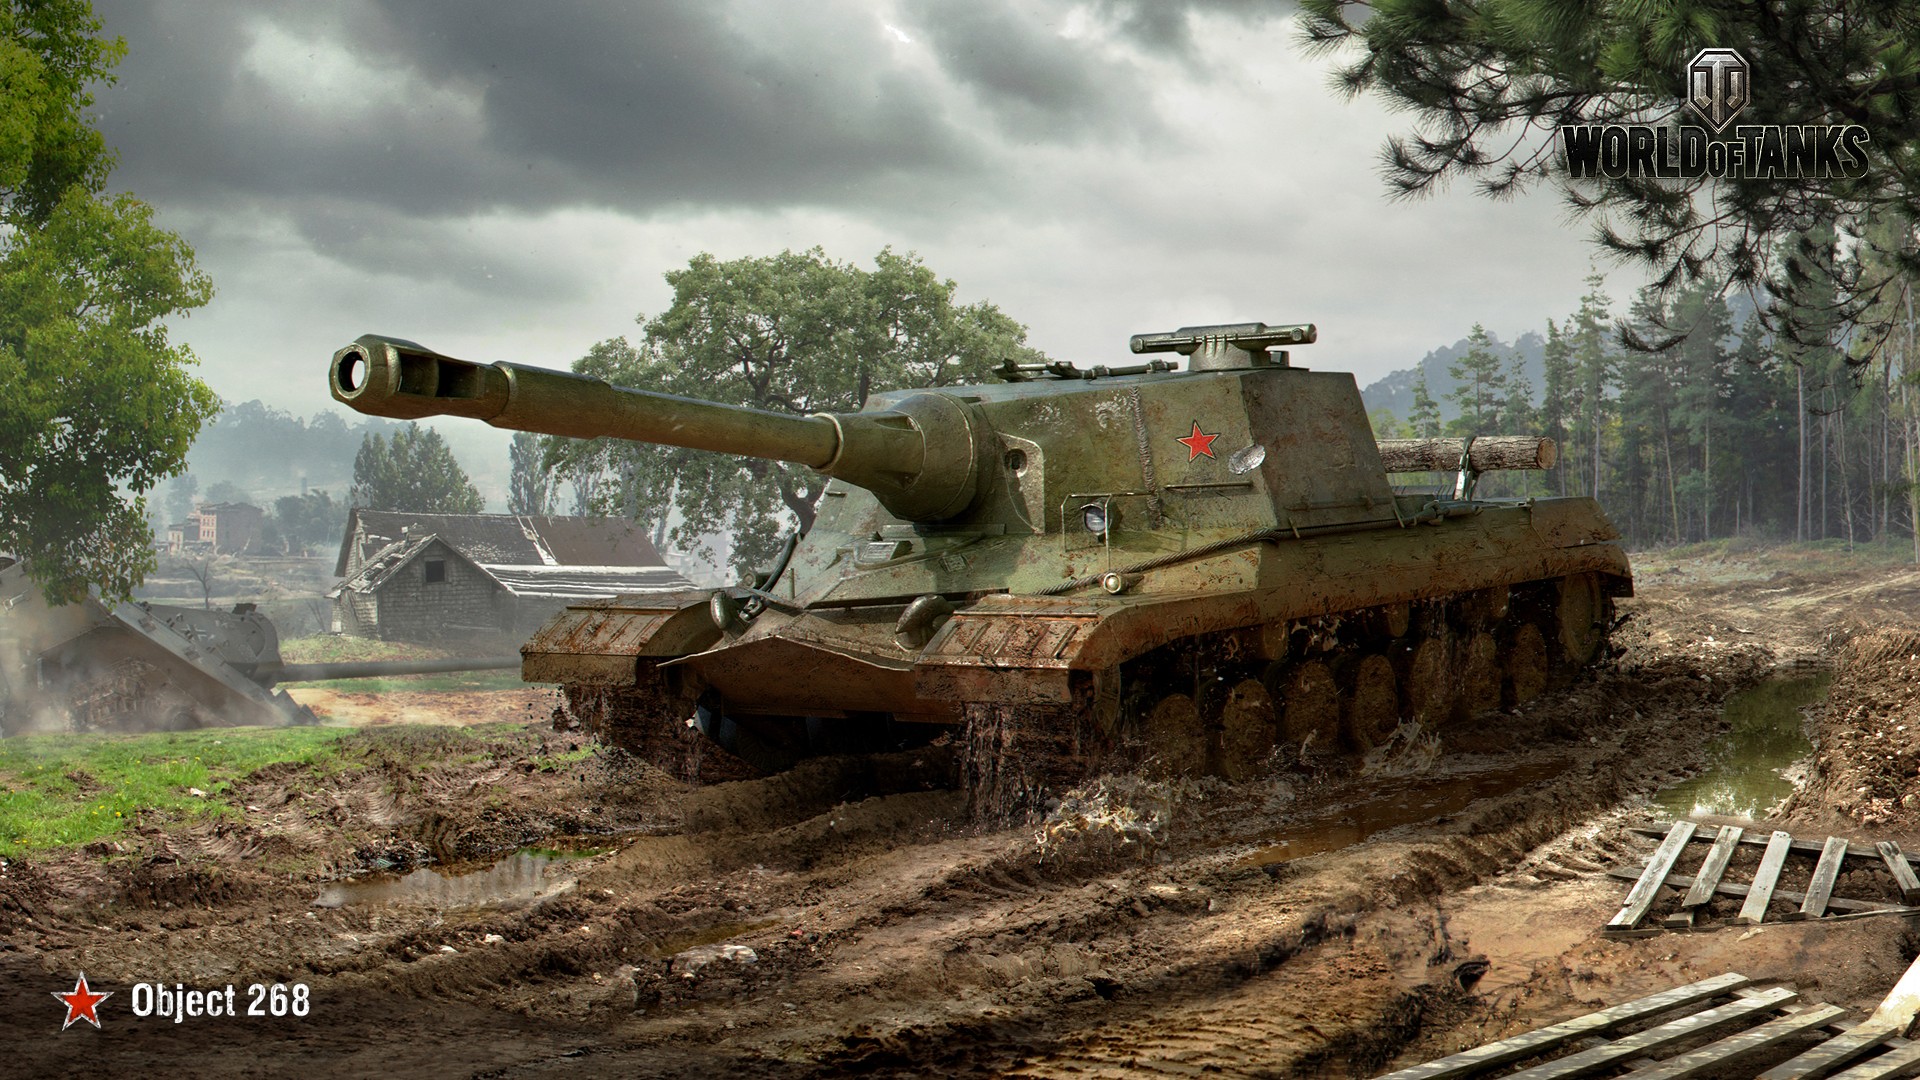 General 1920x1080 tank World of Tanks wargaming PC gaming vehicle military vehicle video game art